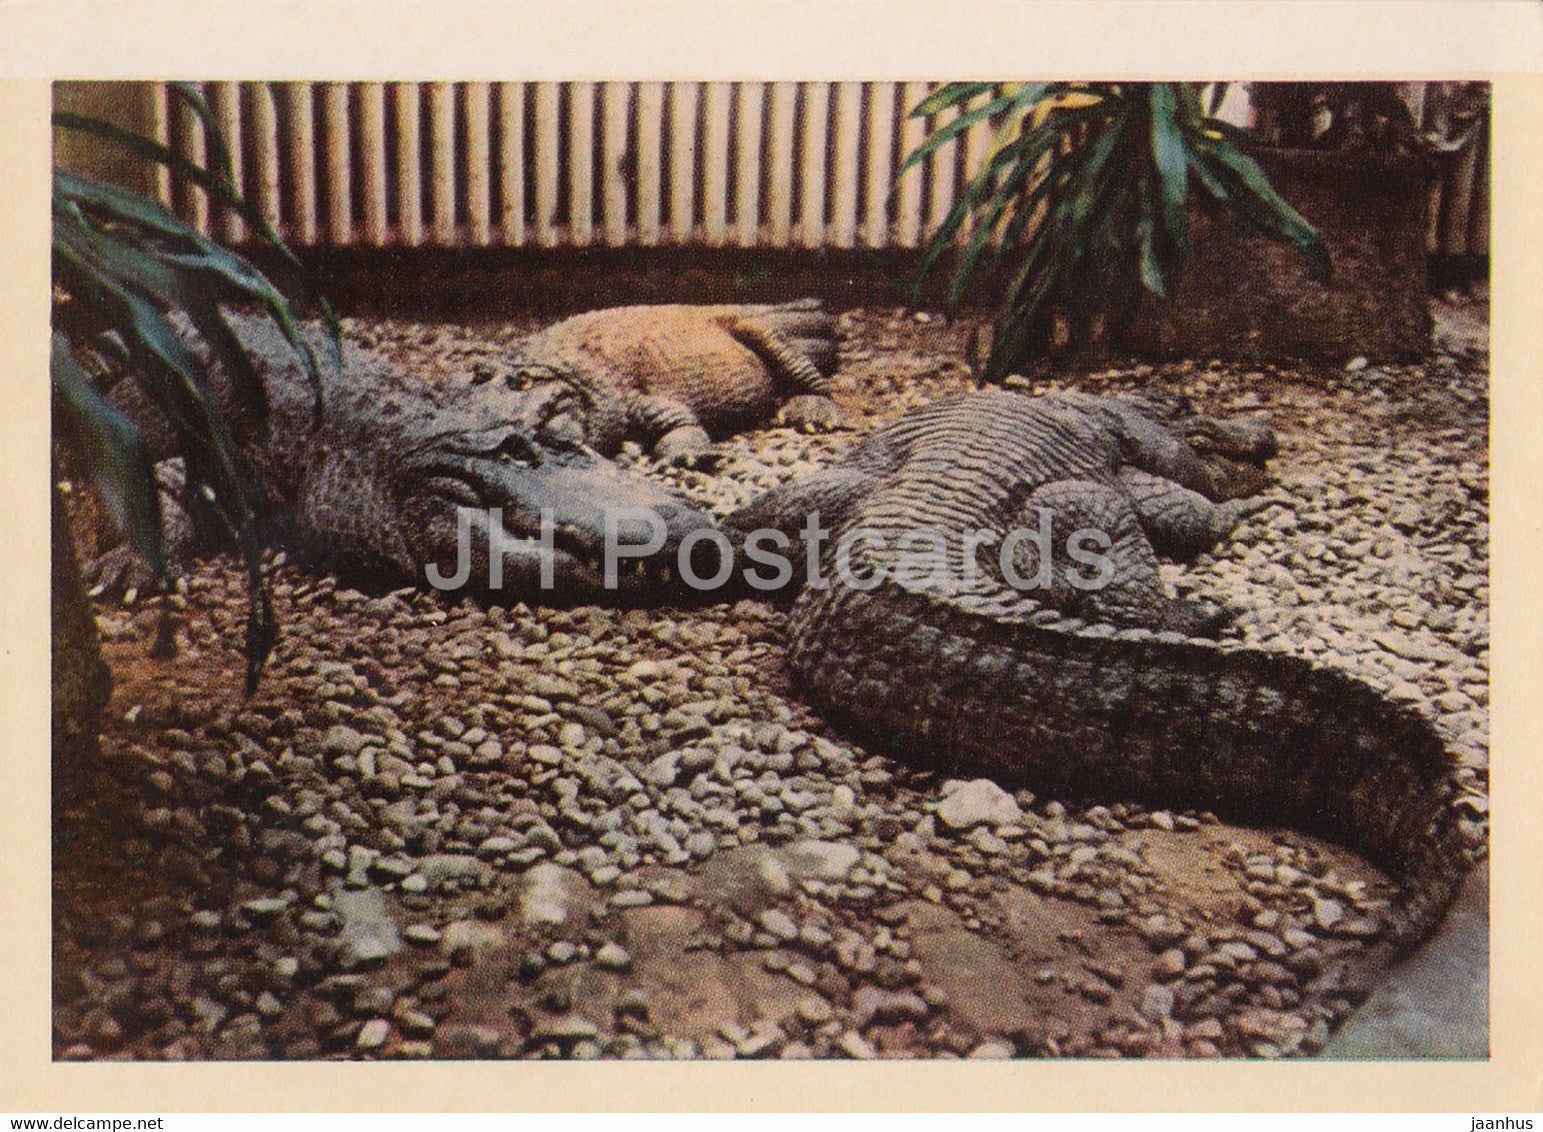 Riga Zoo - American alligator - Alligator mississippiensis - Latvia USSR - unused - JH Postcards